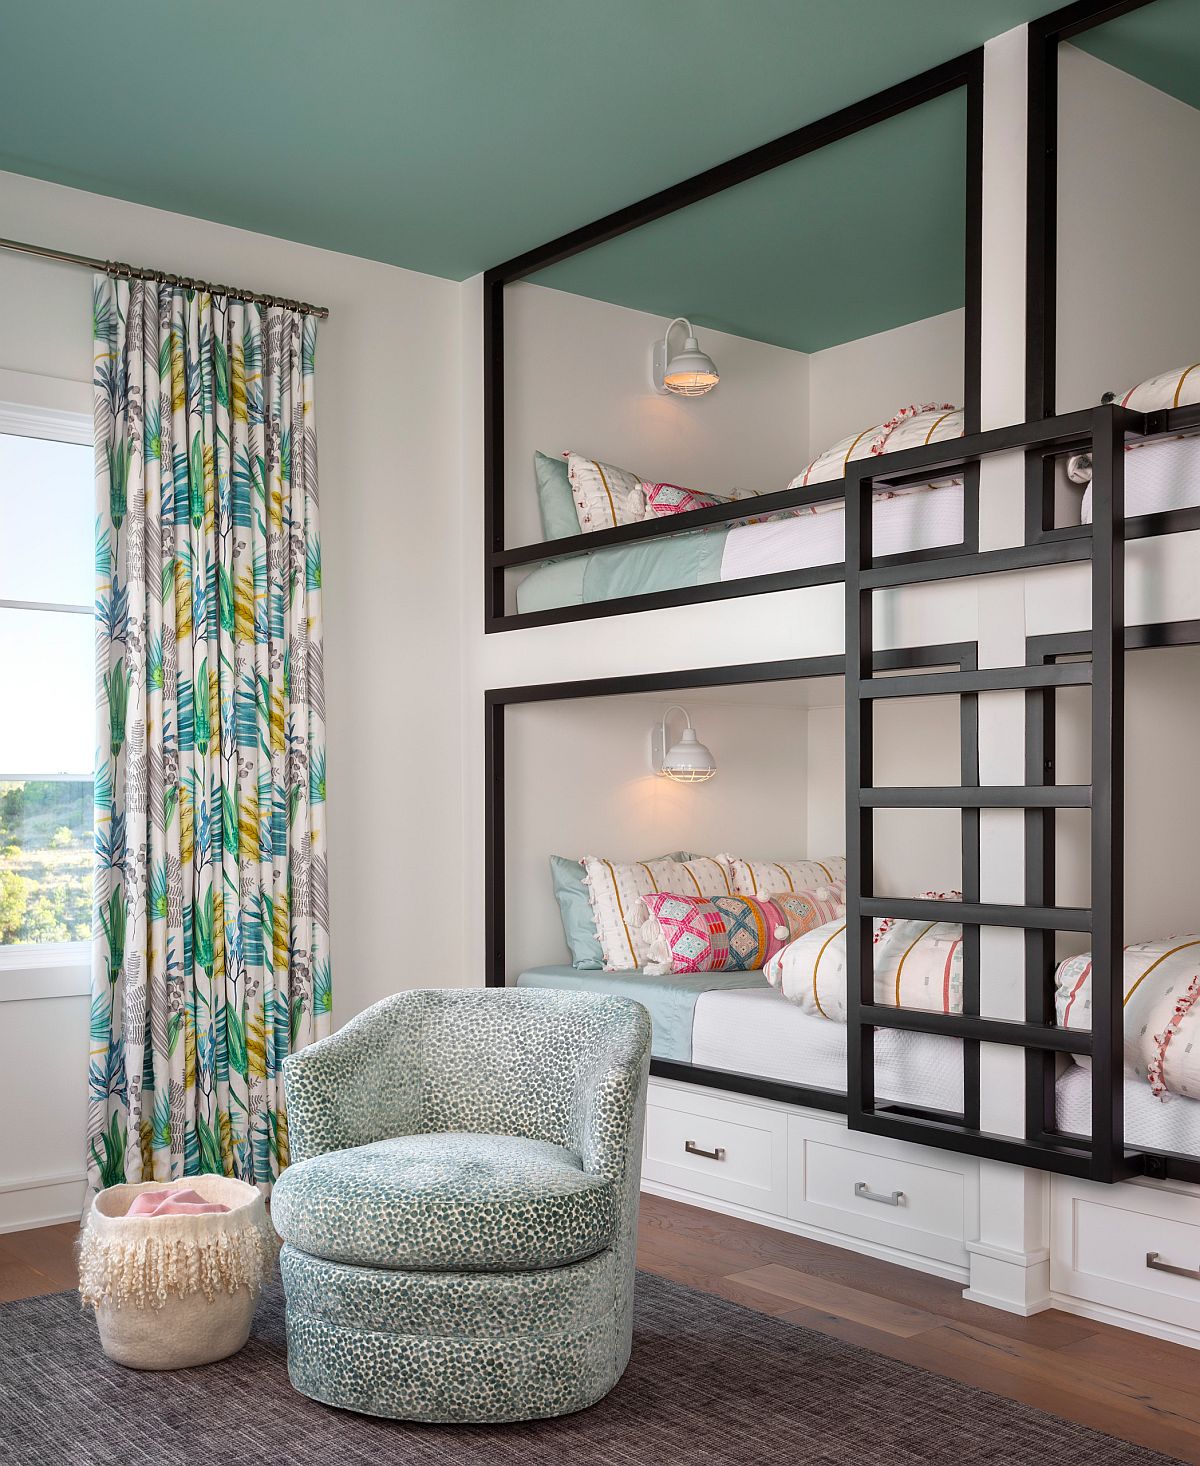 hình ảnh phòng ngủ trẻ em với giường tầng khung đen trắng, rèm cửa hoa văn nhiệt đới, ghế bành thư giãn, trần sơn màu xanh ngọc